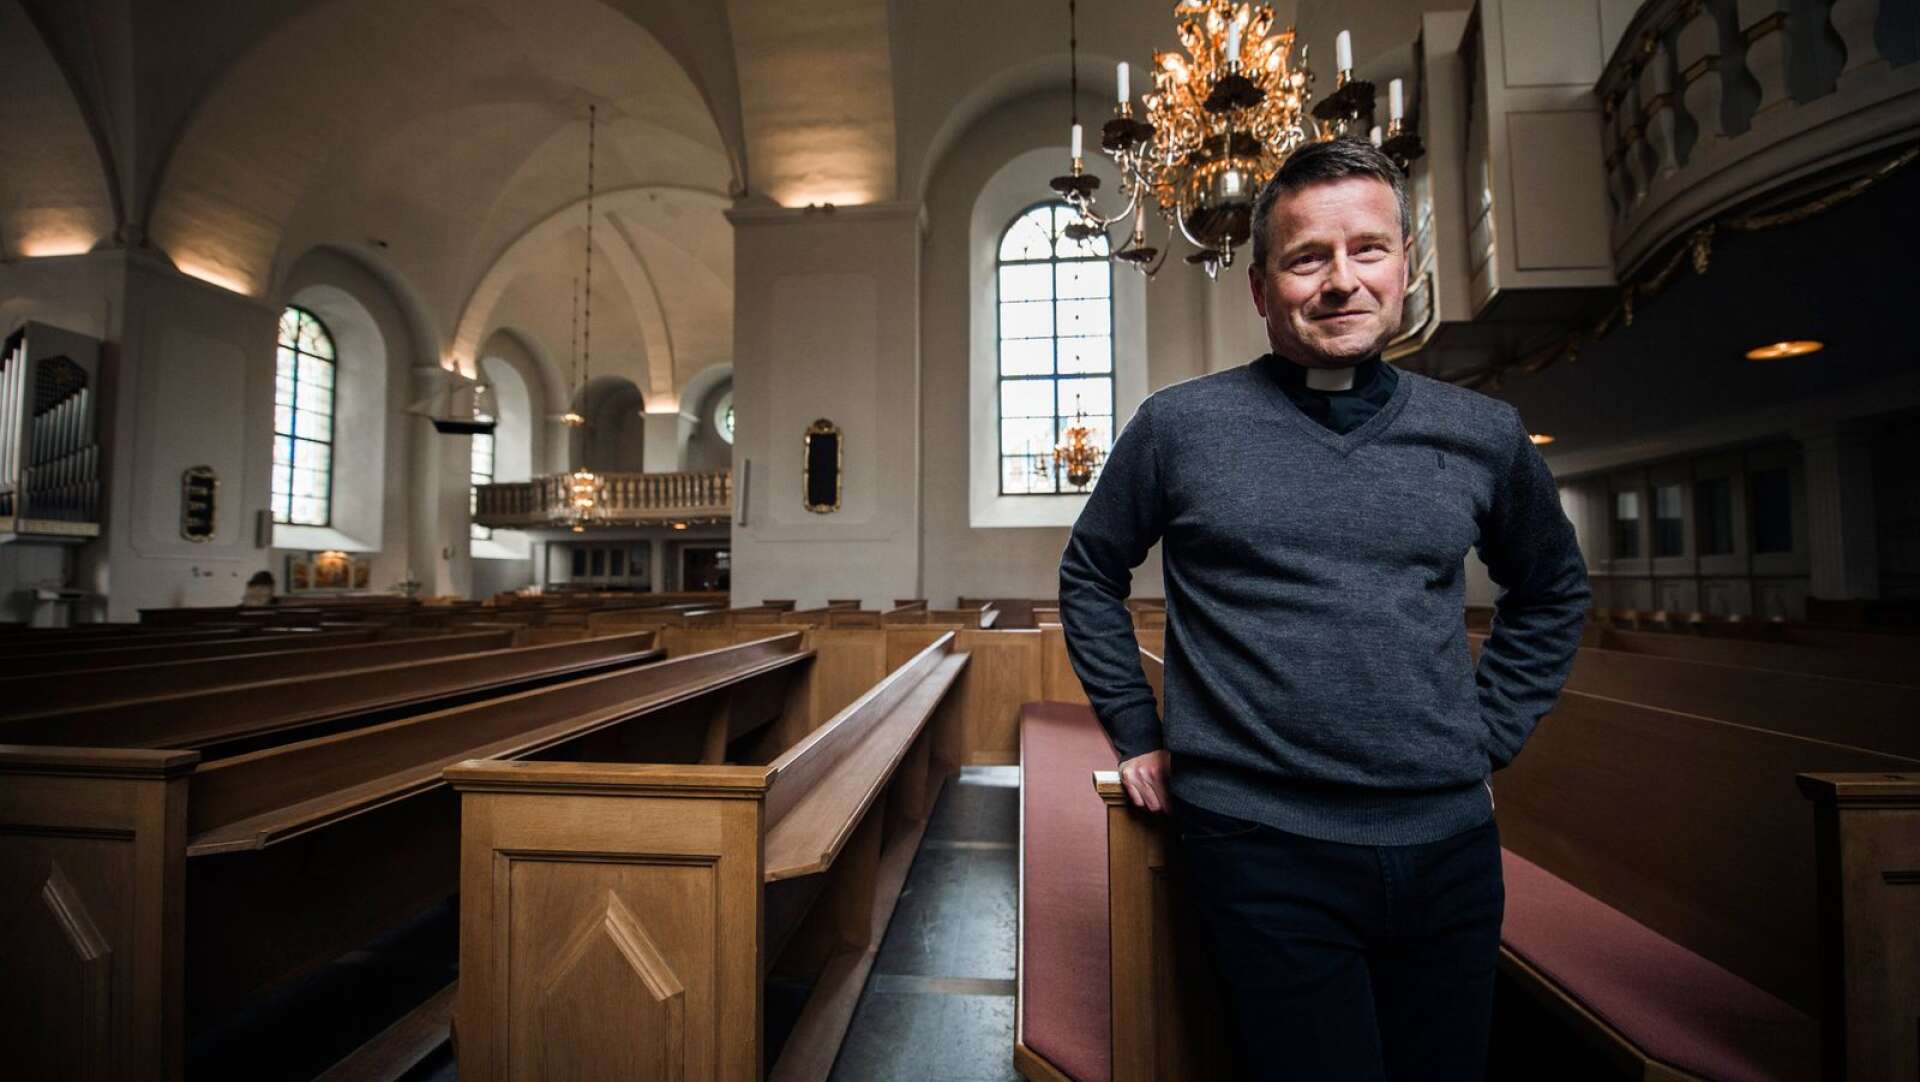 När N:a Finnskoga kyrka hade festligheter i helgen deltog inte biskop Sören Dalevi. Varför inte, funderar en insändarskribent. Nedan svarar biskopen.